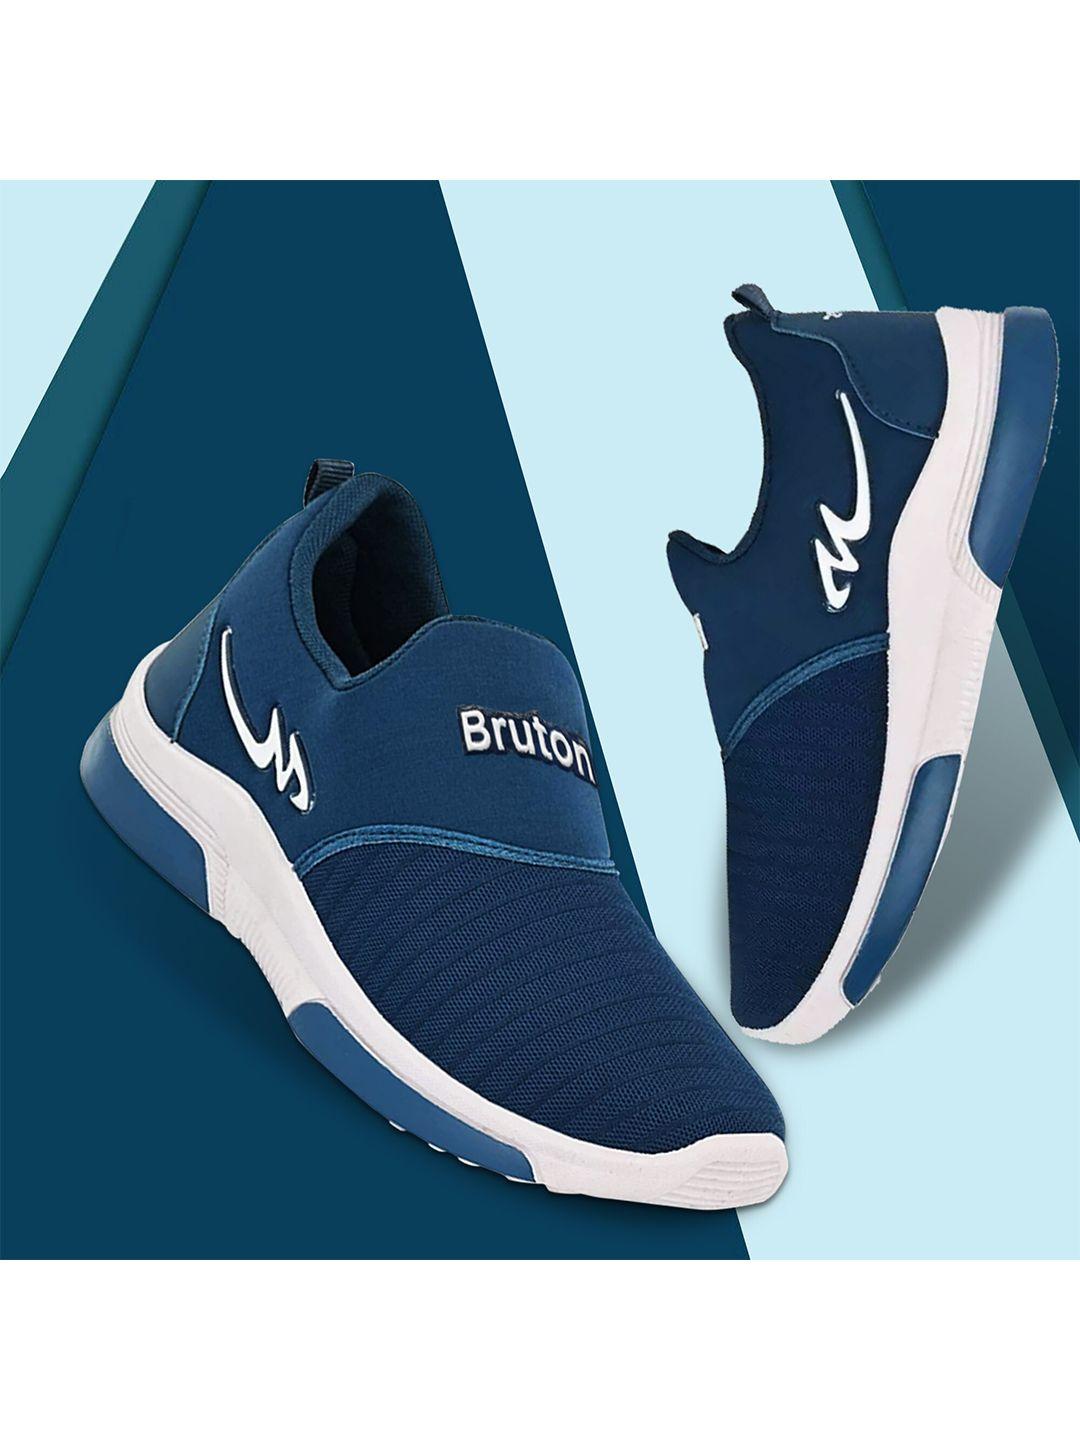 bruton men lightweight mesh running shoes